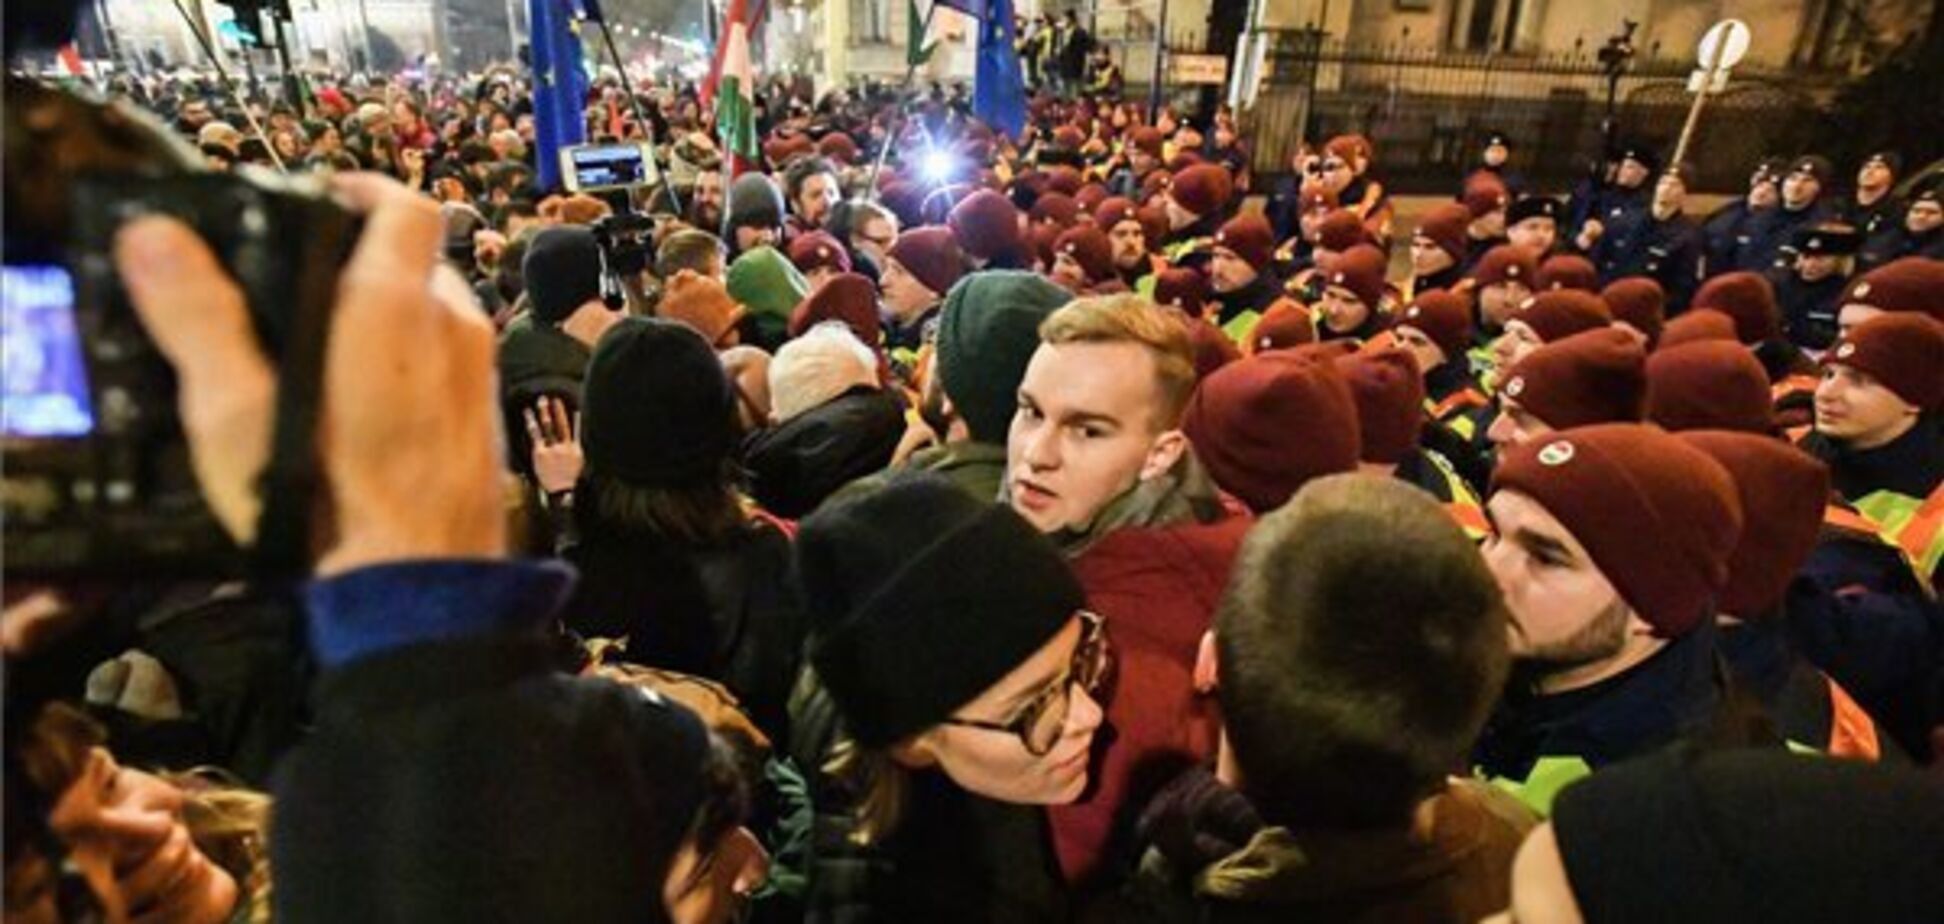 В Будапеште вспыхнули массовые протесты: произошли столкновения. Фото и видео бунта